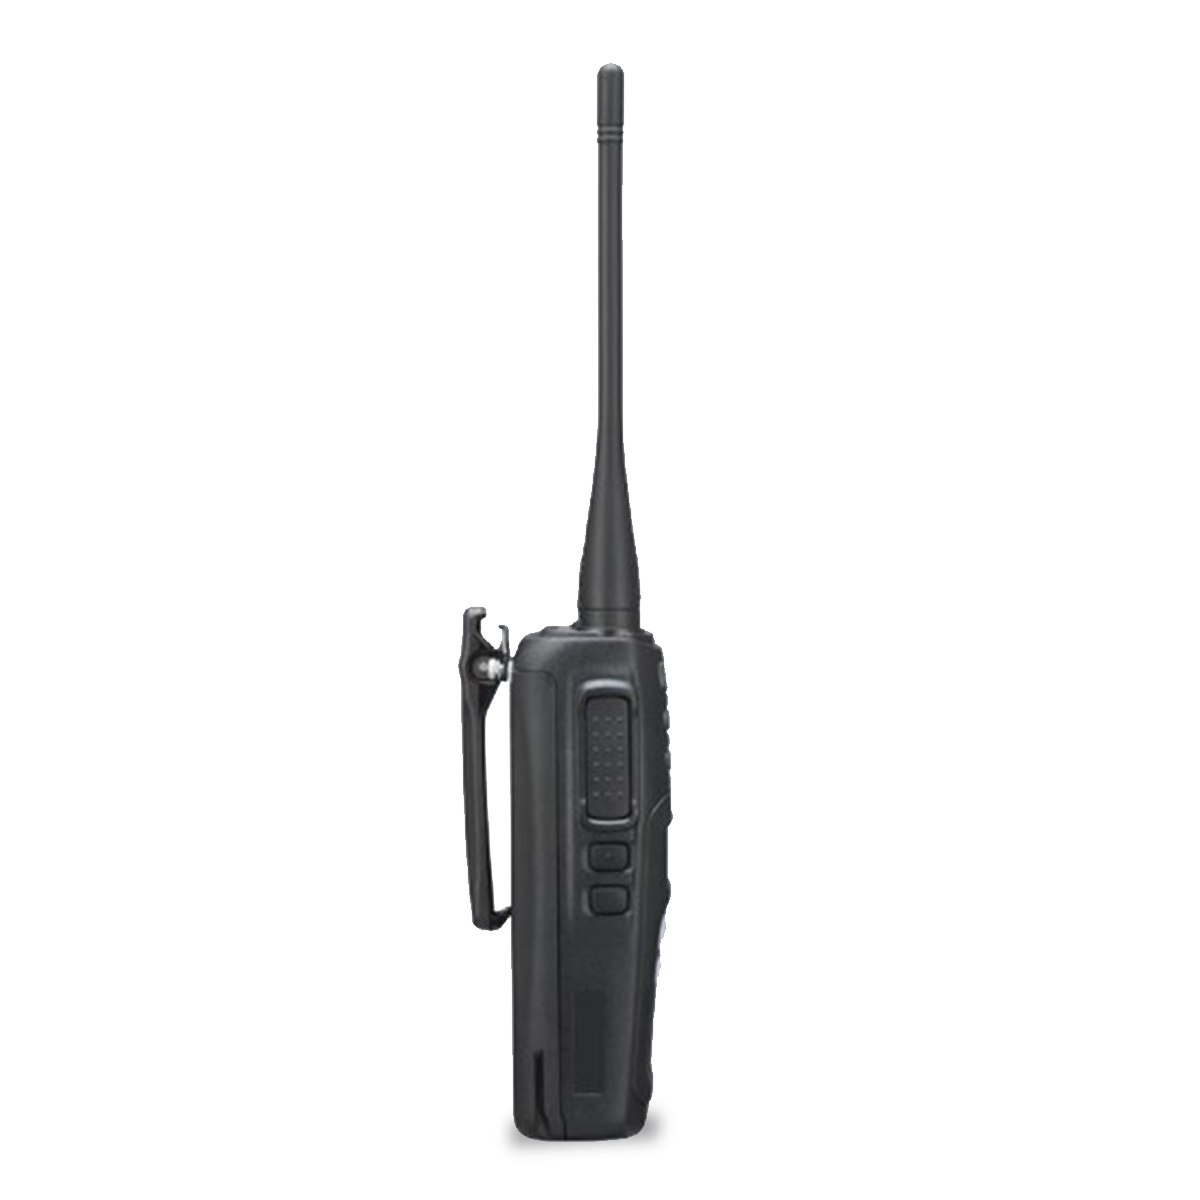 Radio KENWOOD NX-1300-DK4-IS Digital UHF 400-470 MHz sin pantalla y sin teclado intrínsecamente seguro